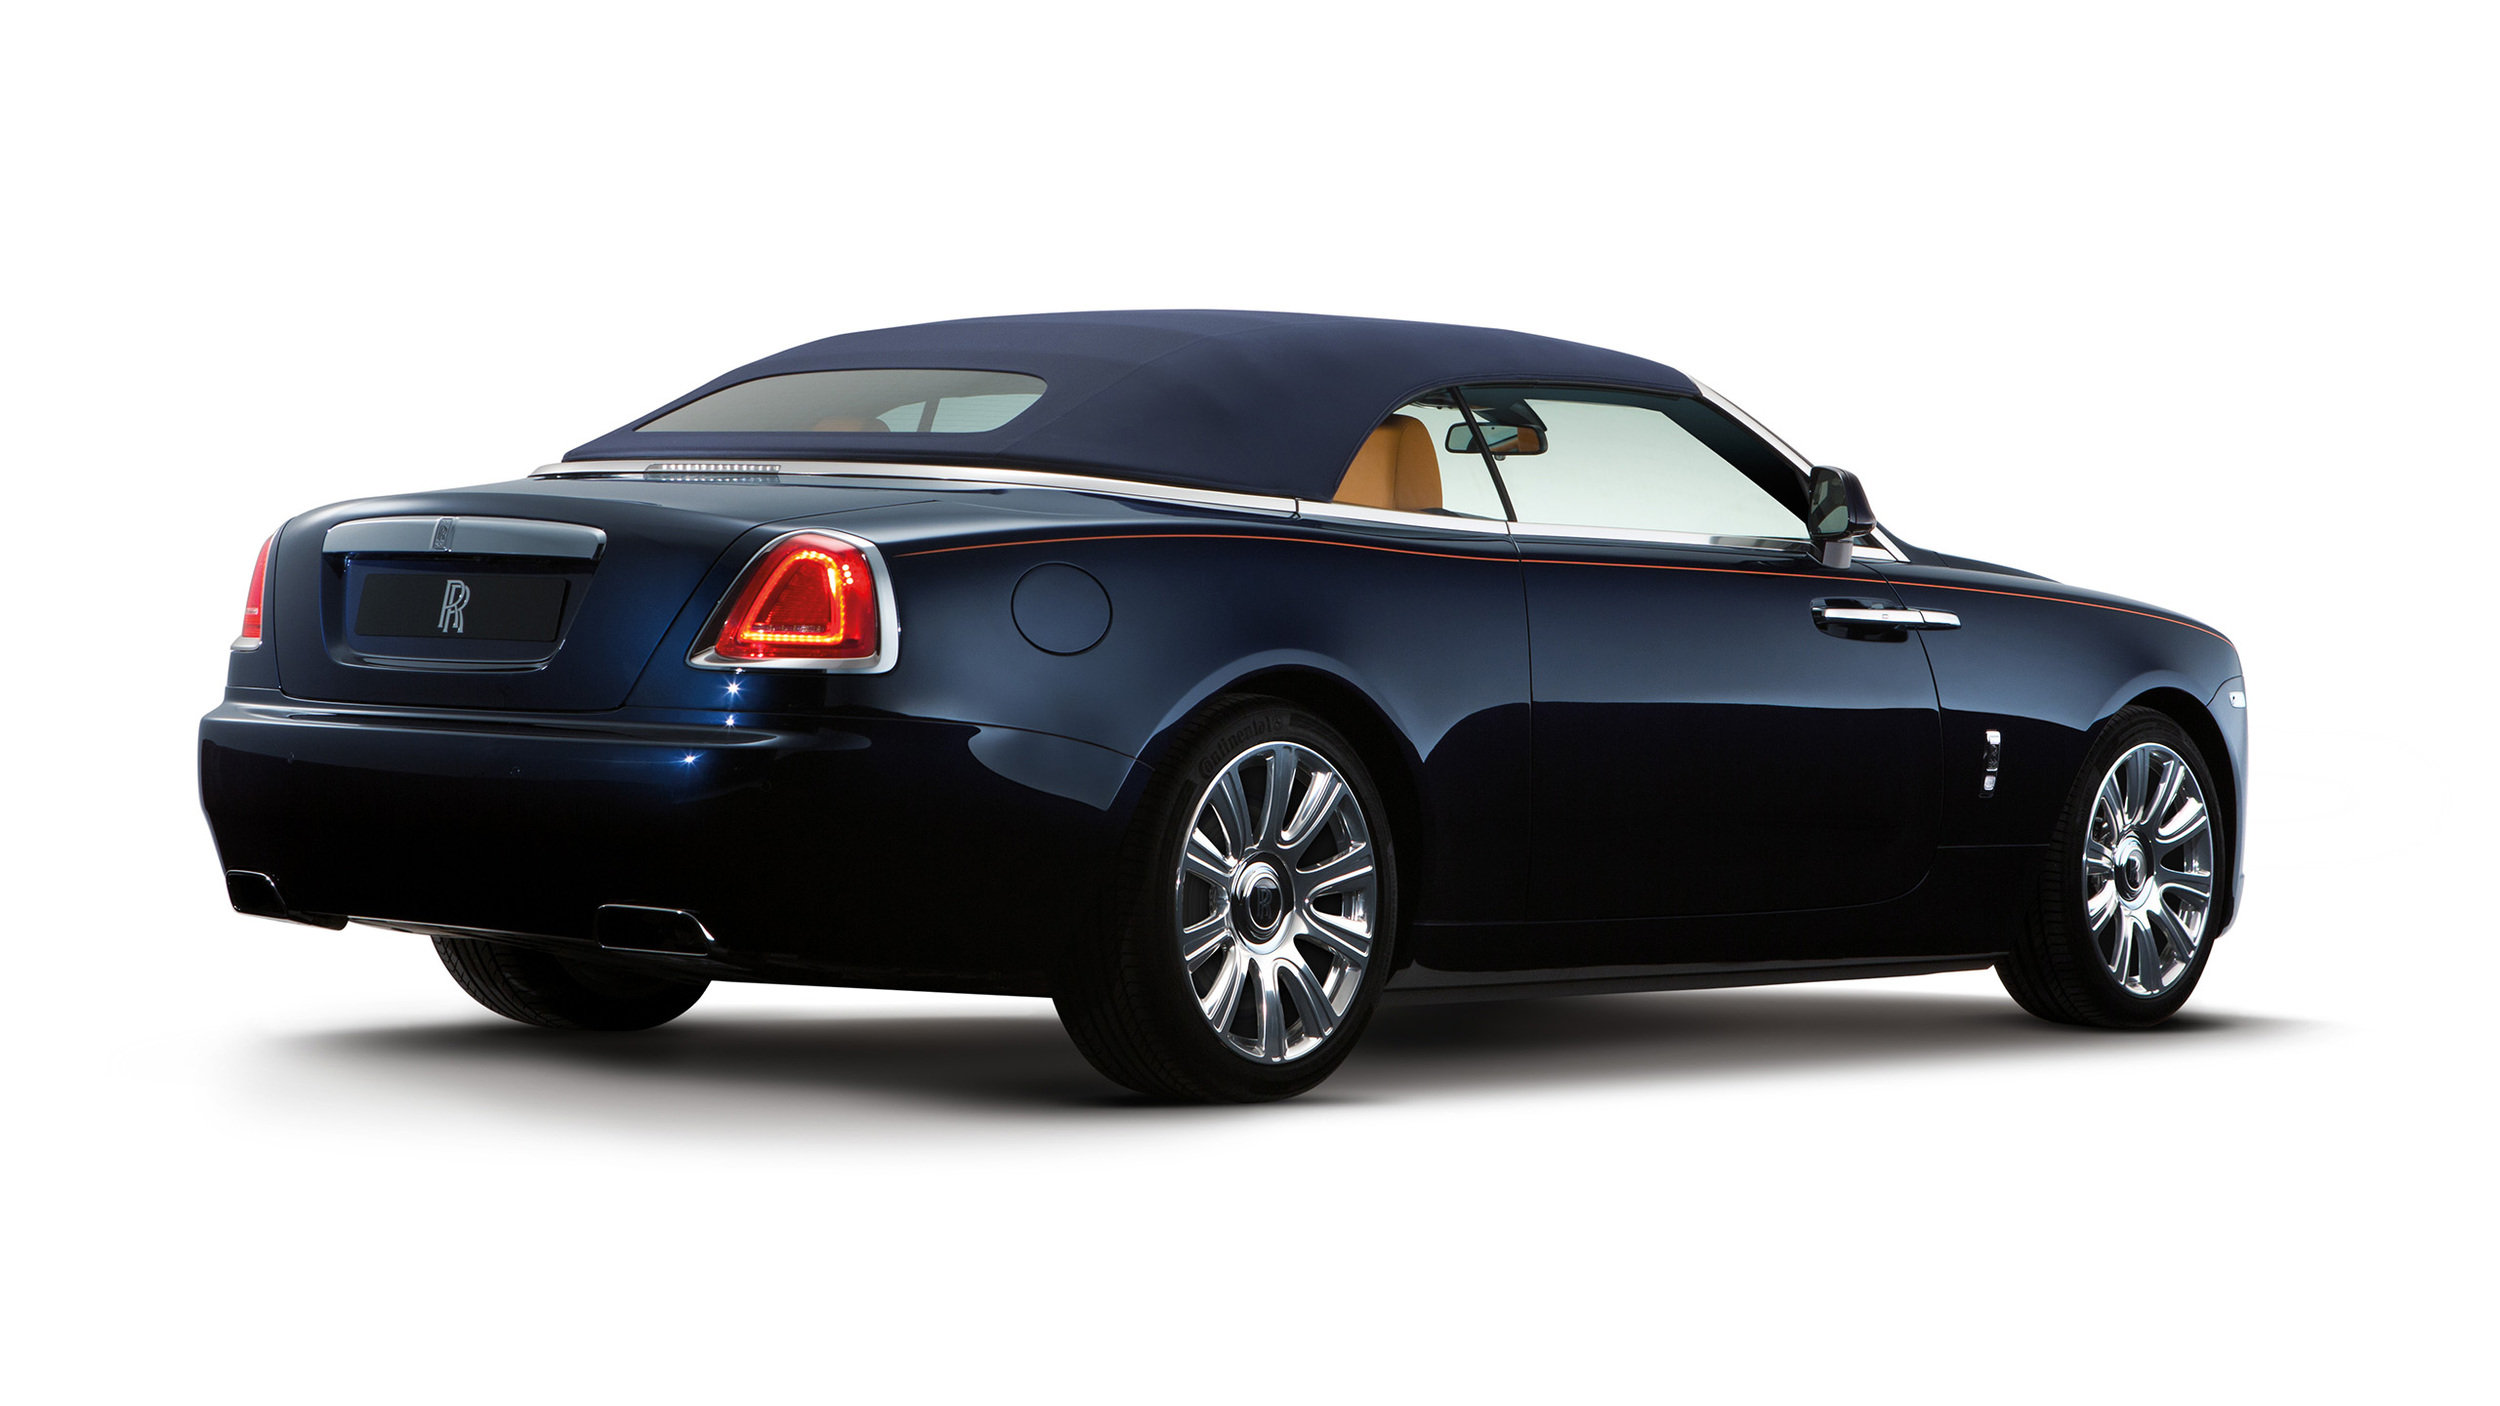 Rolls-Royce unveils new Dawn